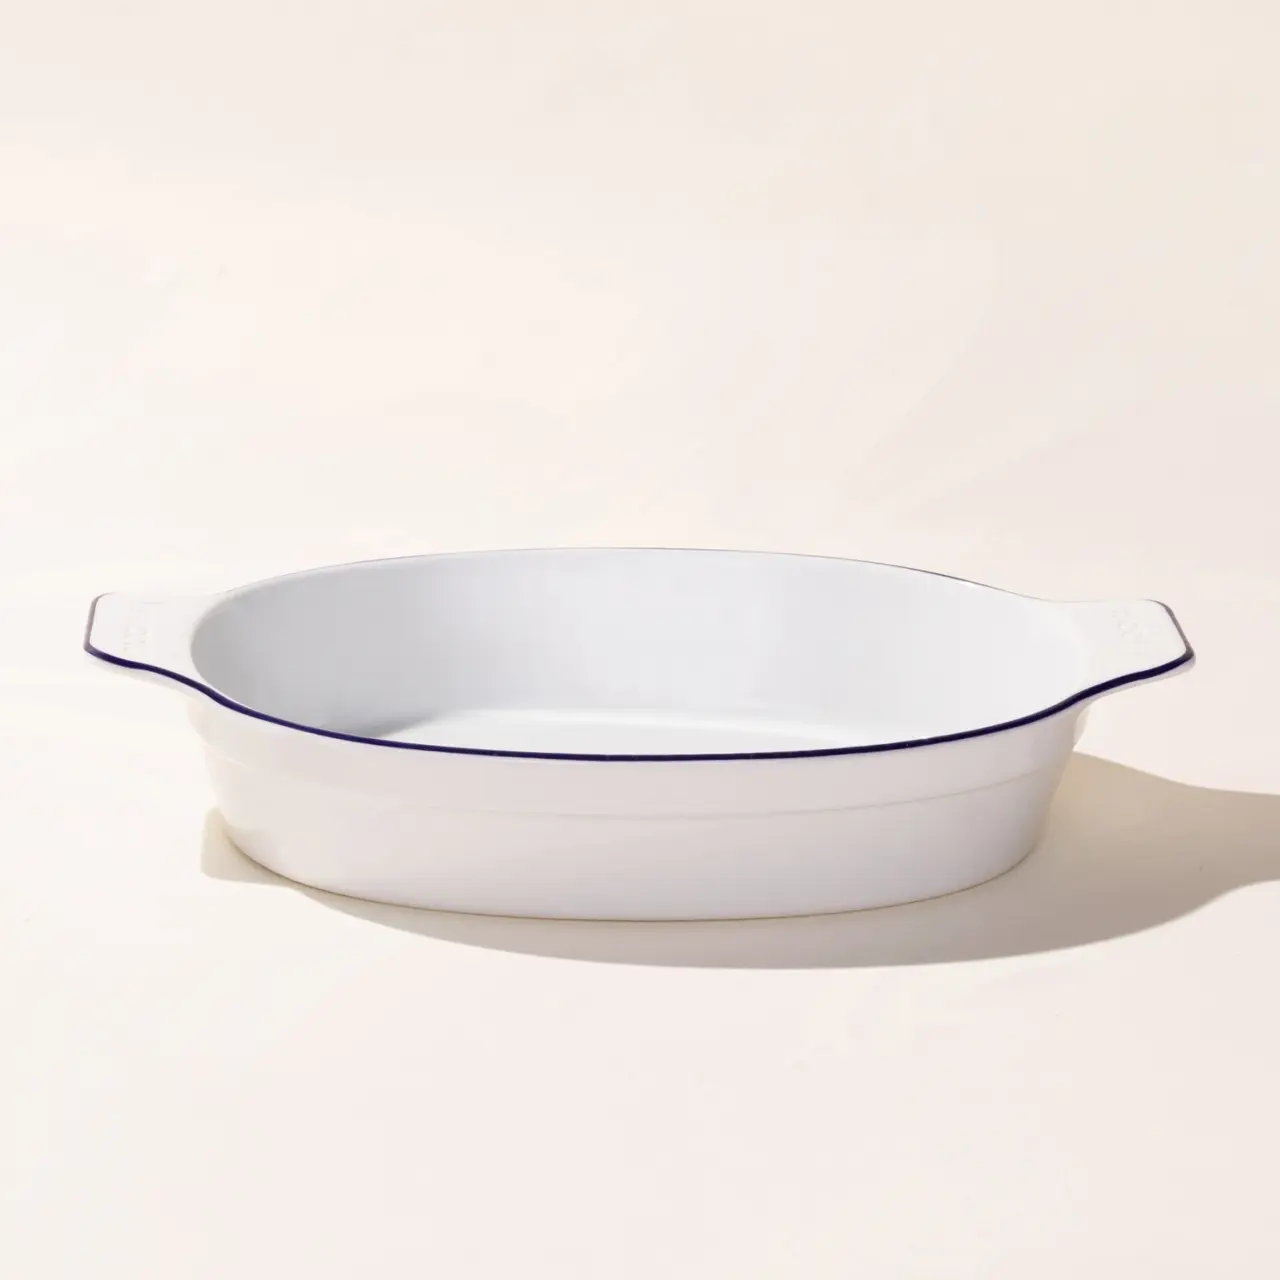 Blue Rim Oval Porcelain Bakeware